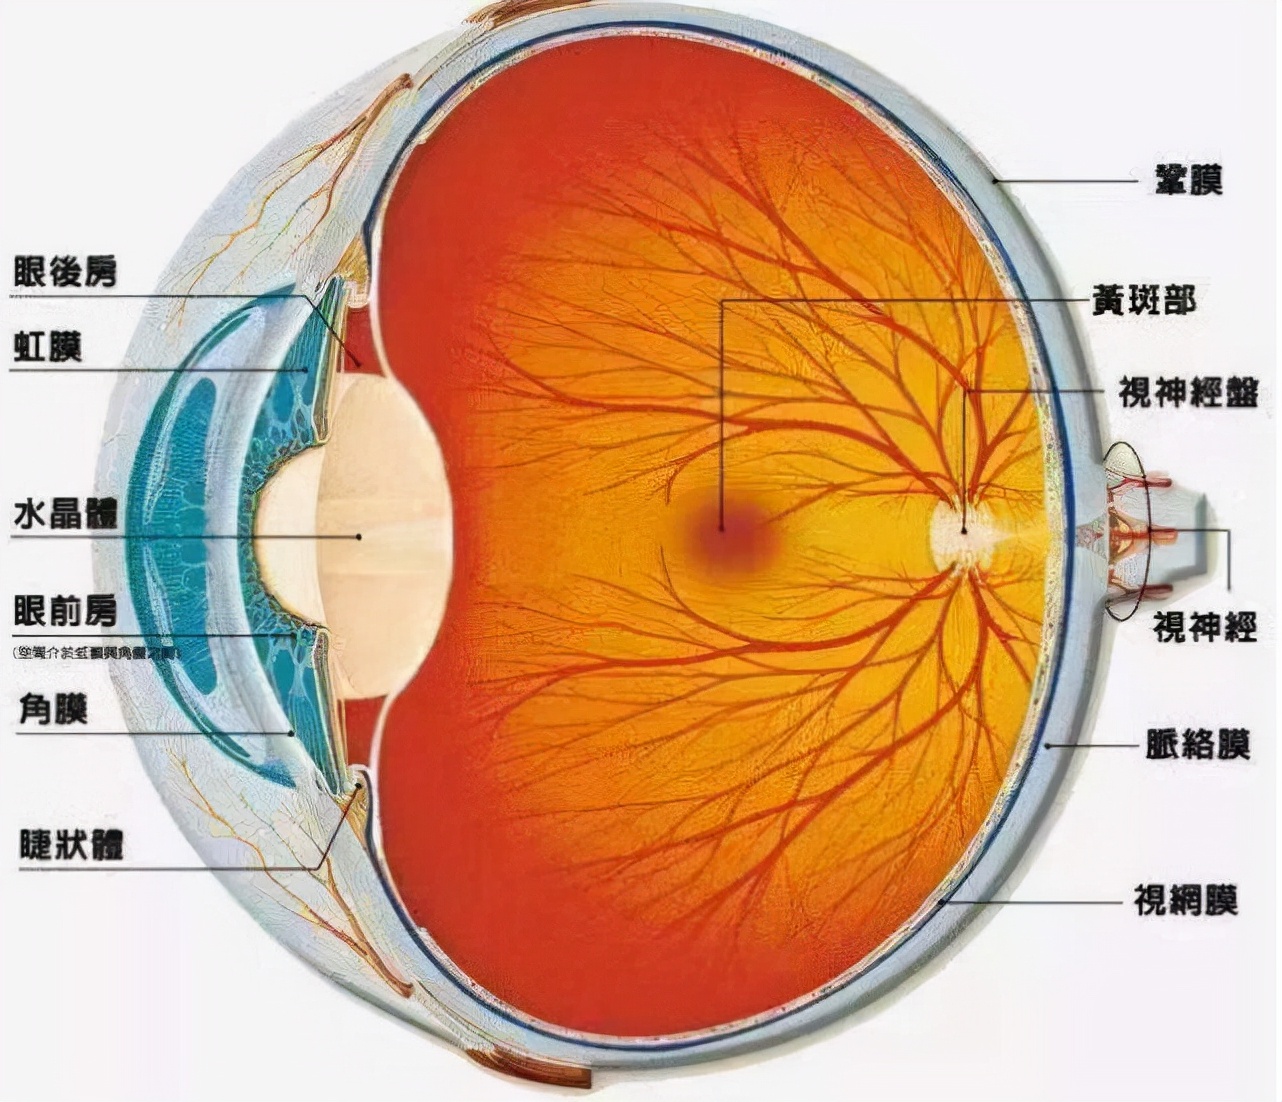 罕见疾病回旋状脉络膜视网膜萎缩,具有遗传性质,易引起其他病症